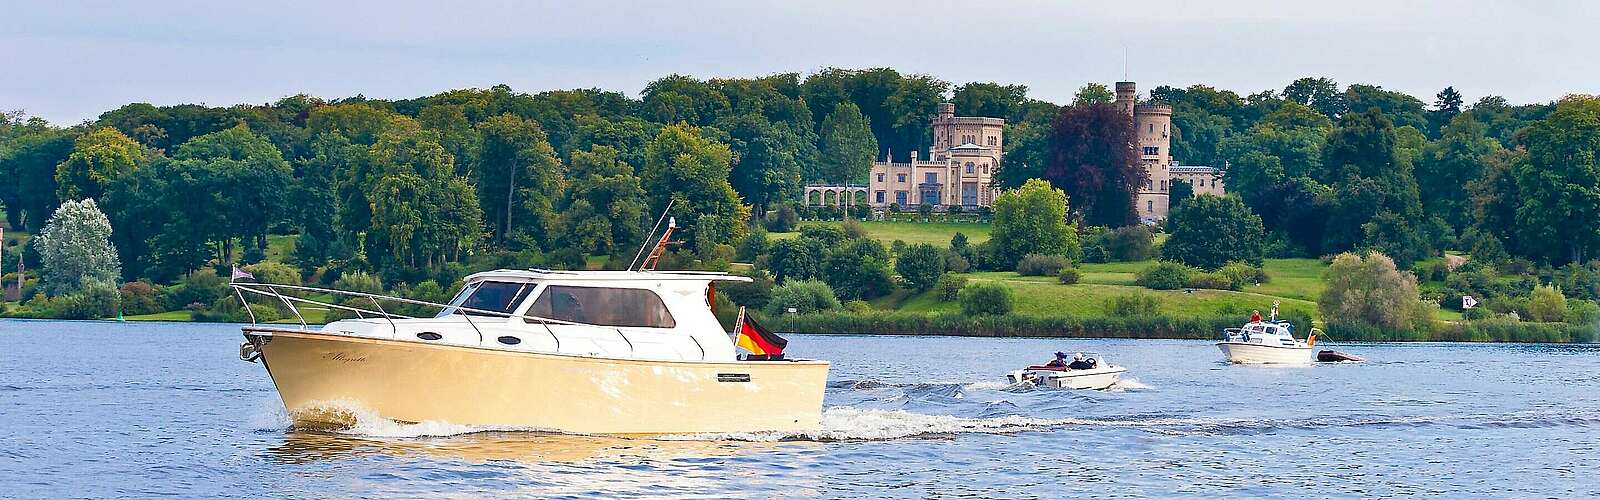 Bootfahrer auf der Havel vor Schloss Babelsberg,
        
    

        Foto: TMB Tourismus-Marketing Brandenburg GmbH und SPSG/Yorck Maecke